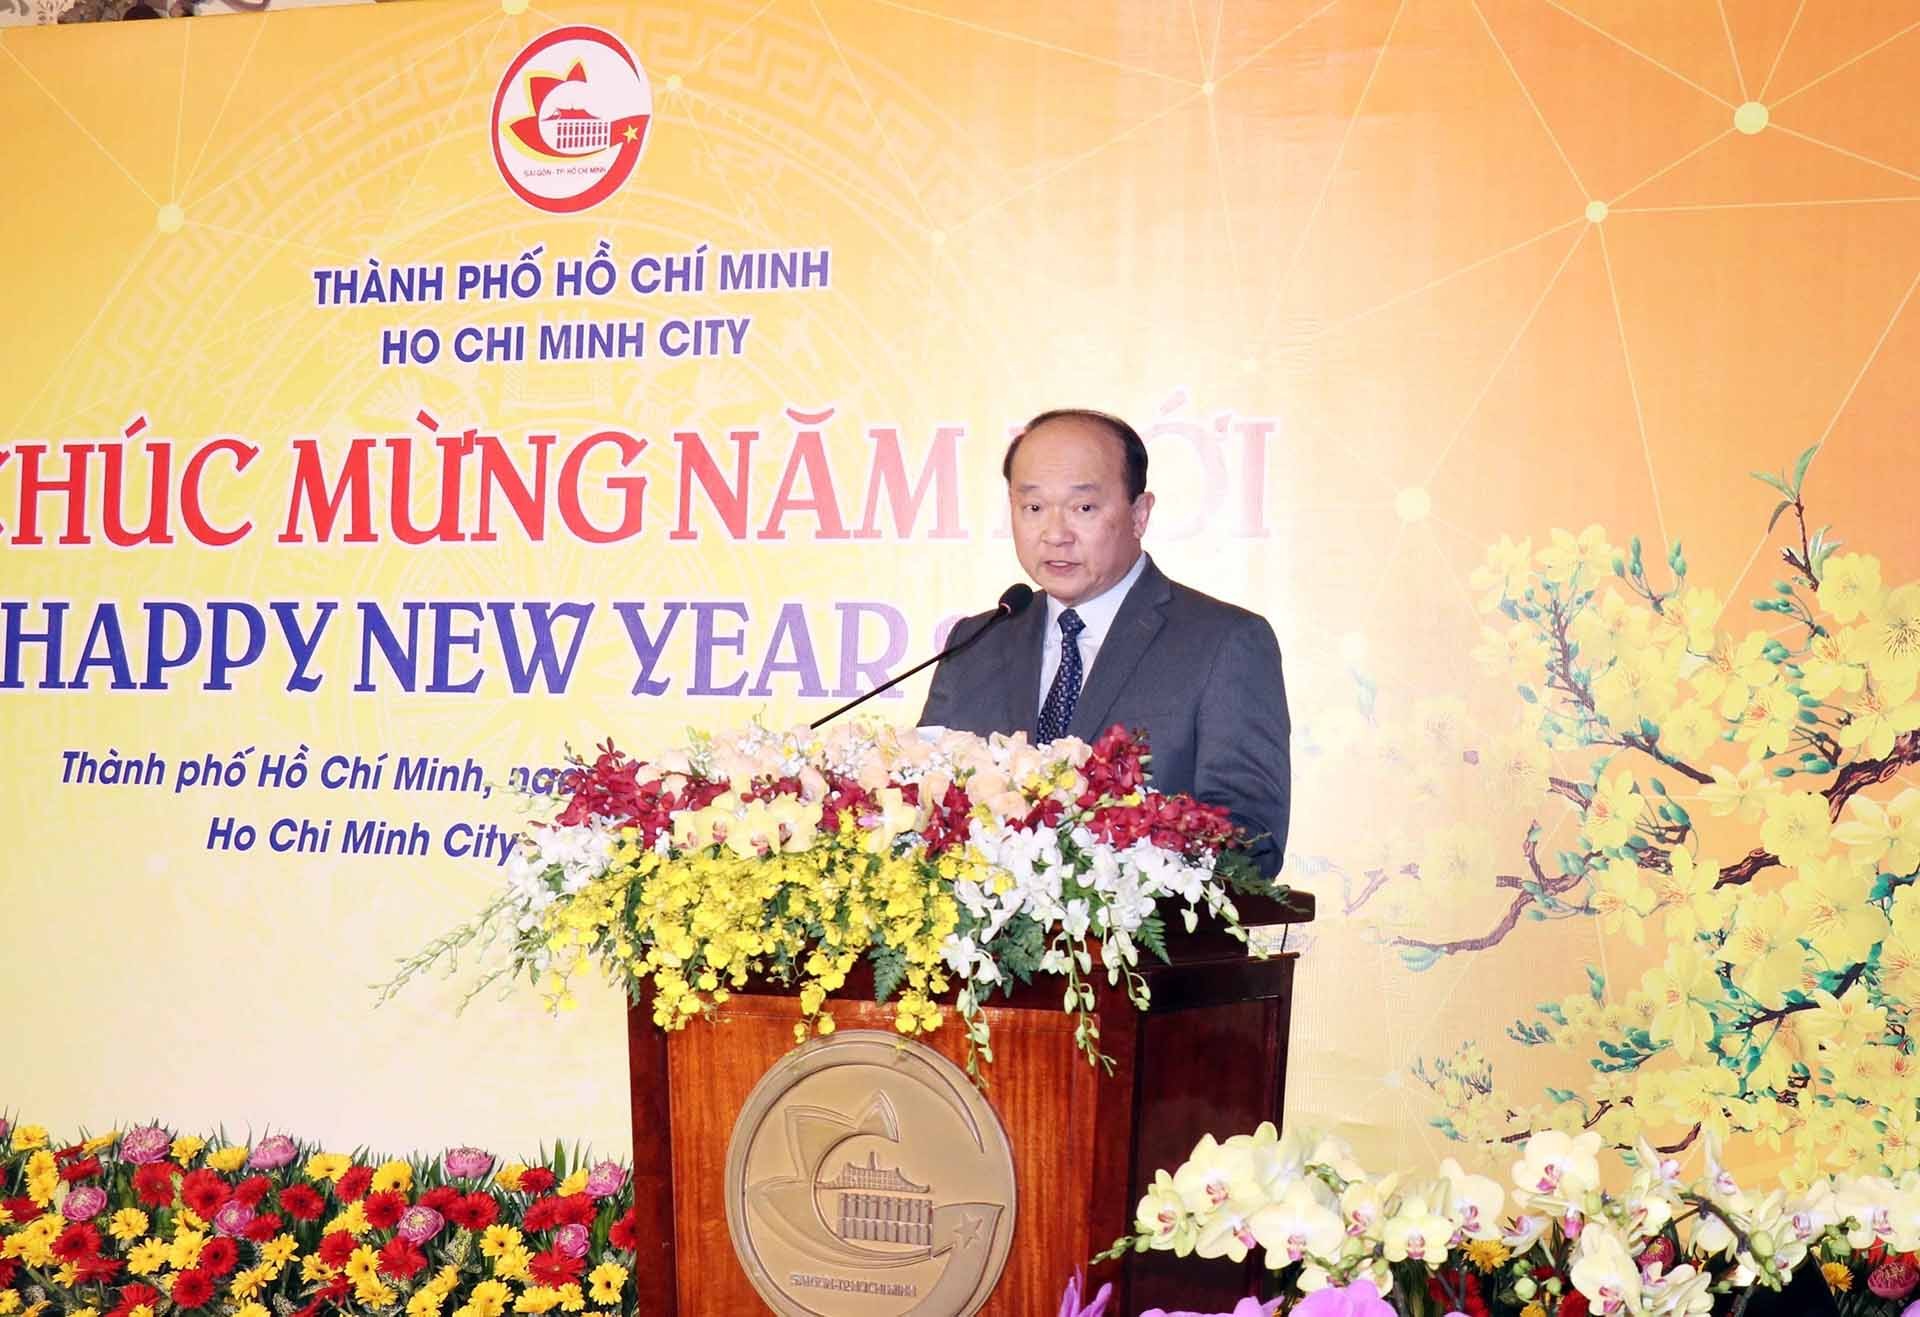 Ông Roy Kho Ngee Seng, Tổng lãnh sự Singapore tại TP. Hồ Chí Minh, Trưởng đoàn Đoàn lãnh sự các nước tại thành phố phát biểu chúc mừng tại buổi gặp mặt. (Nguồn: TTXVN)